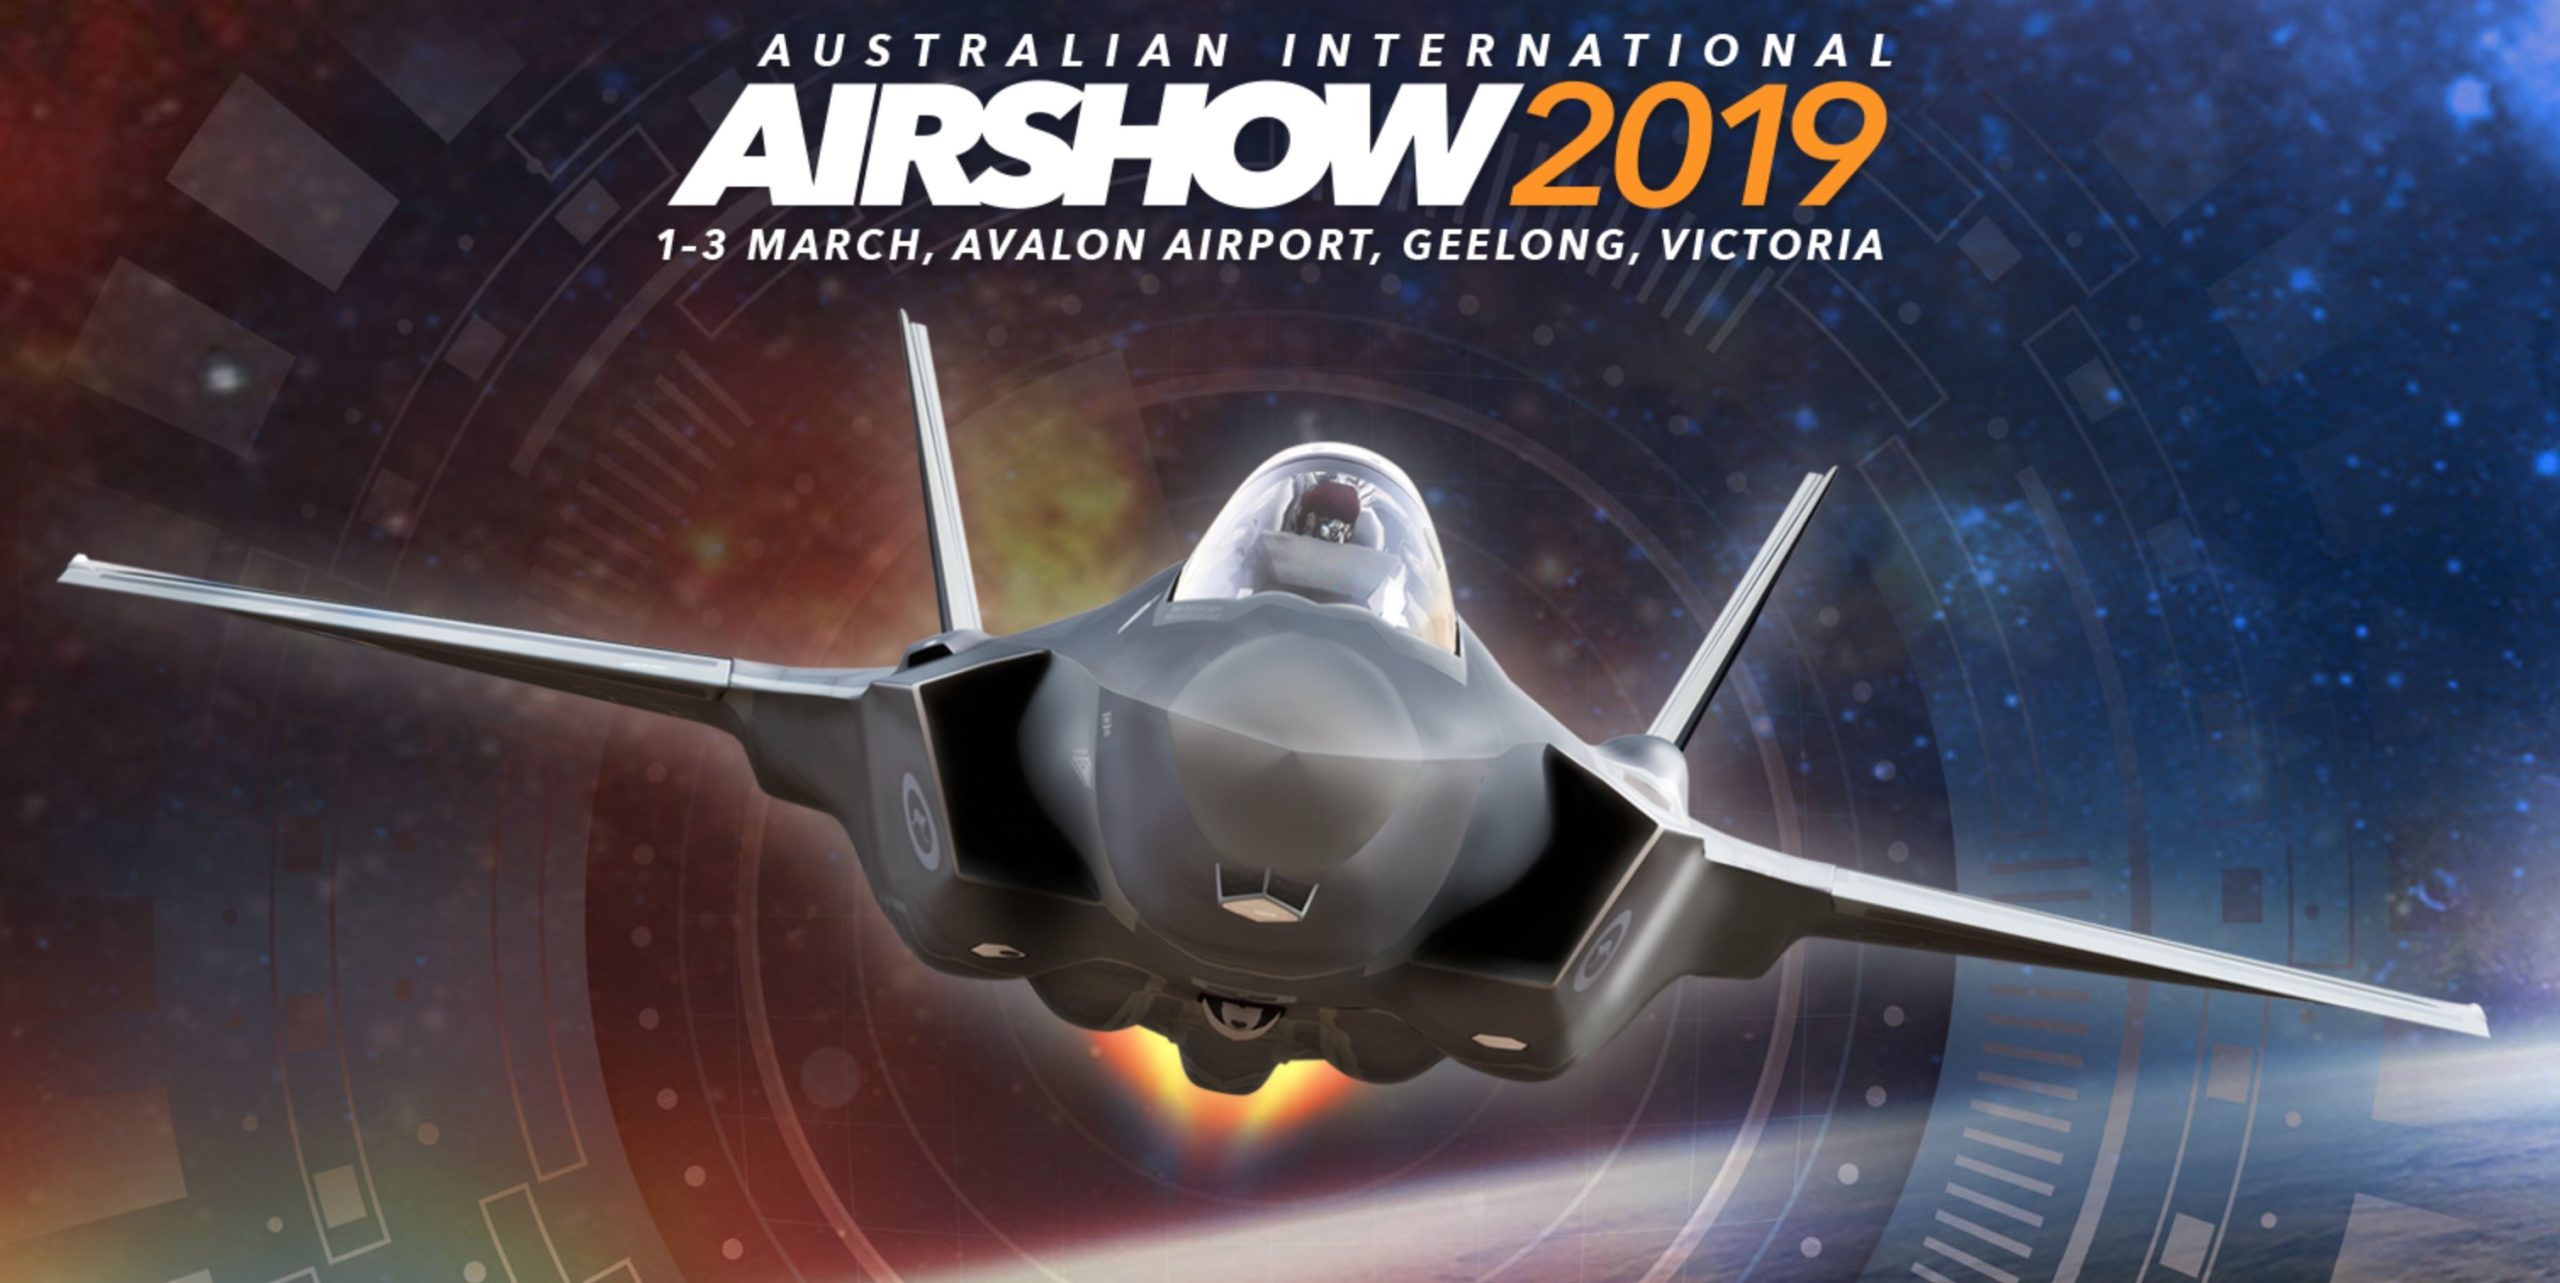 Avalon 2019: Δείτε εντυπωσιακές αφίξεις αεροσκαφών στο αυστραλιανό Air Show